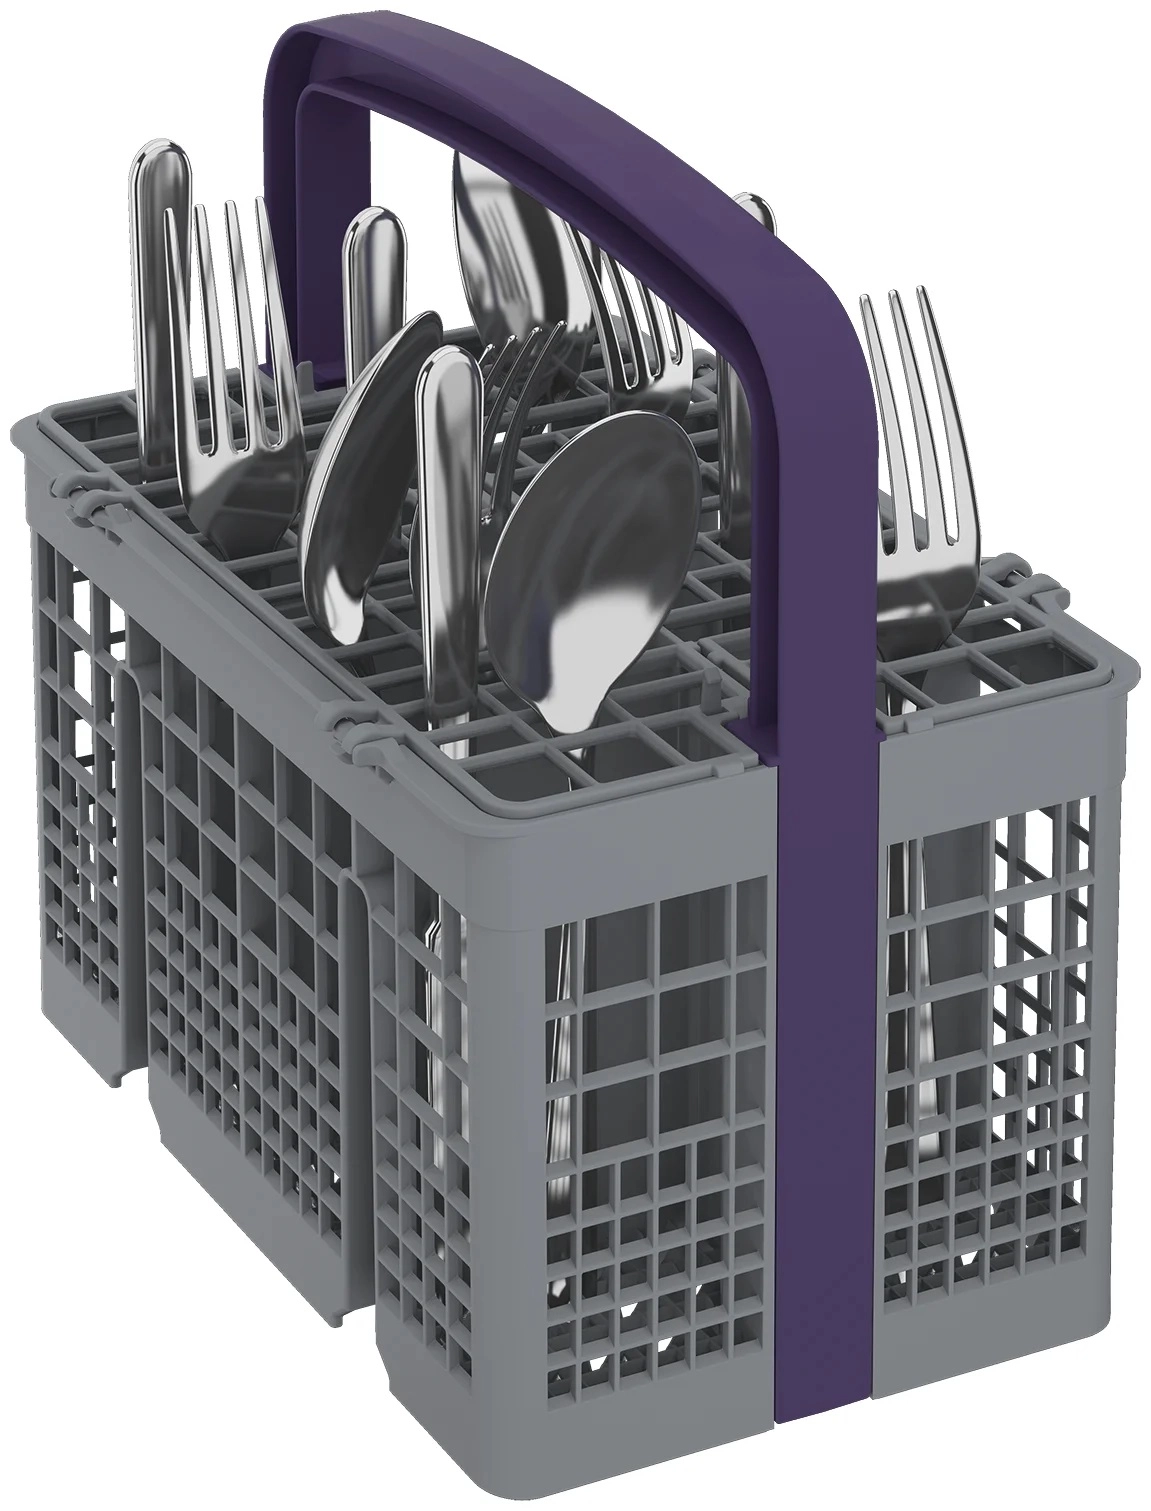 Встраиваемая посудомоечная машина Beko AquaIntense DIN28420 онлайн